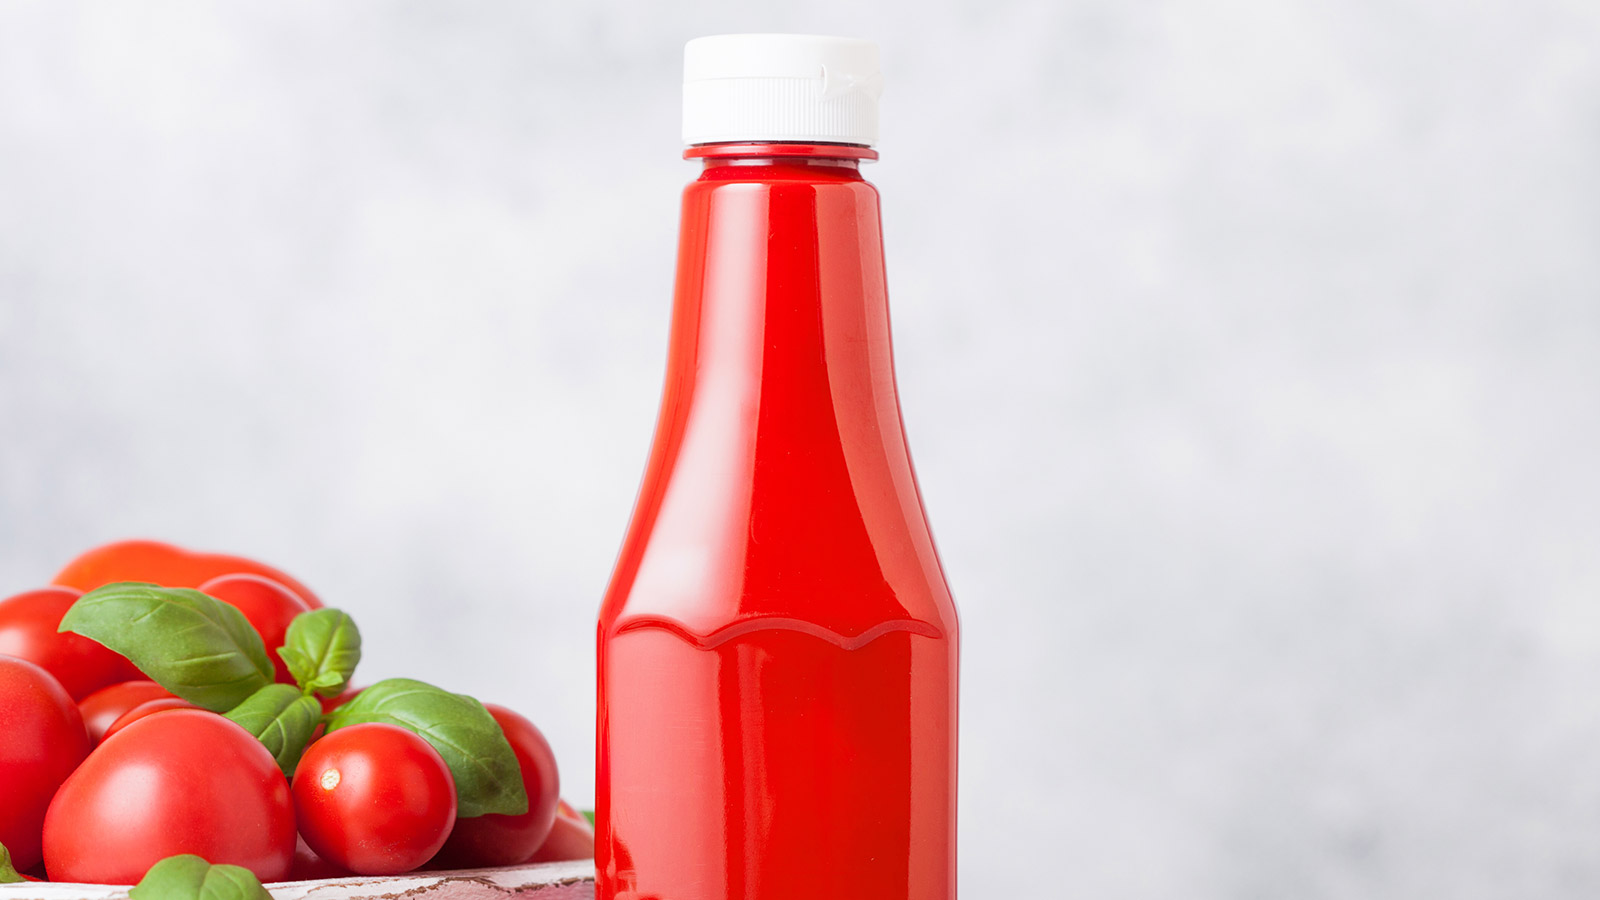 Рецепты вкусного кетчупа и 7 способов его оригинального использования